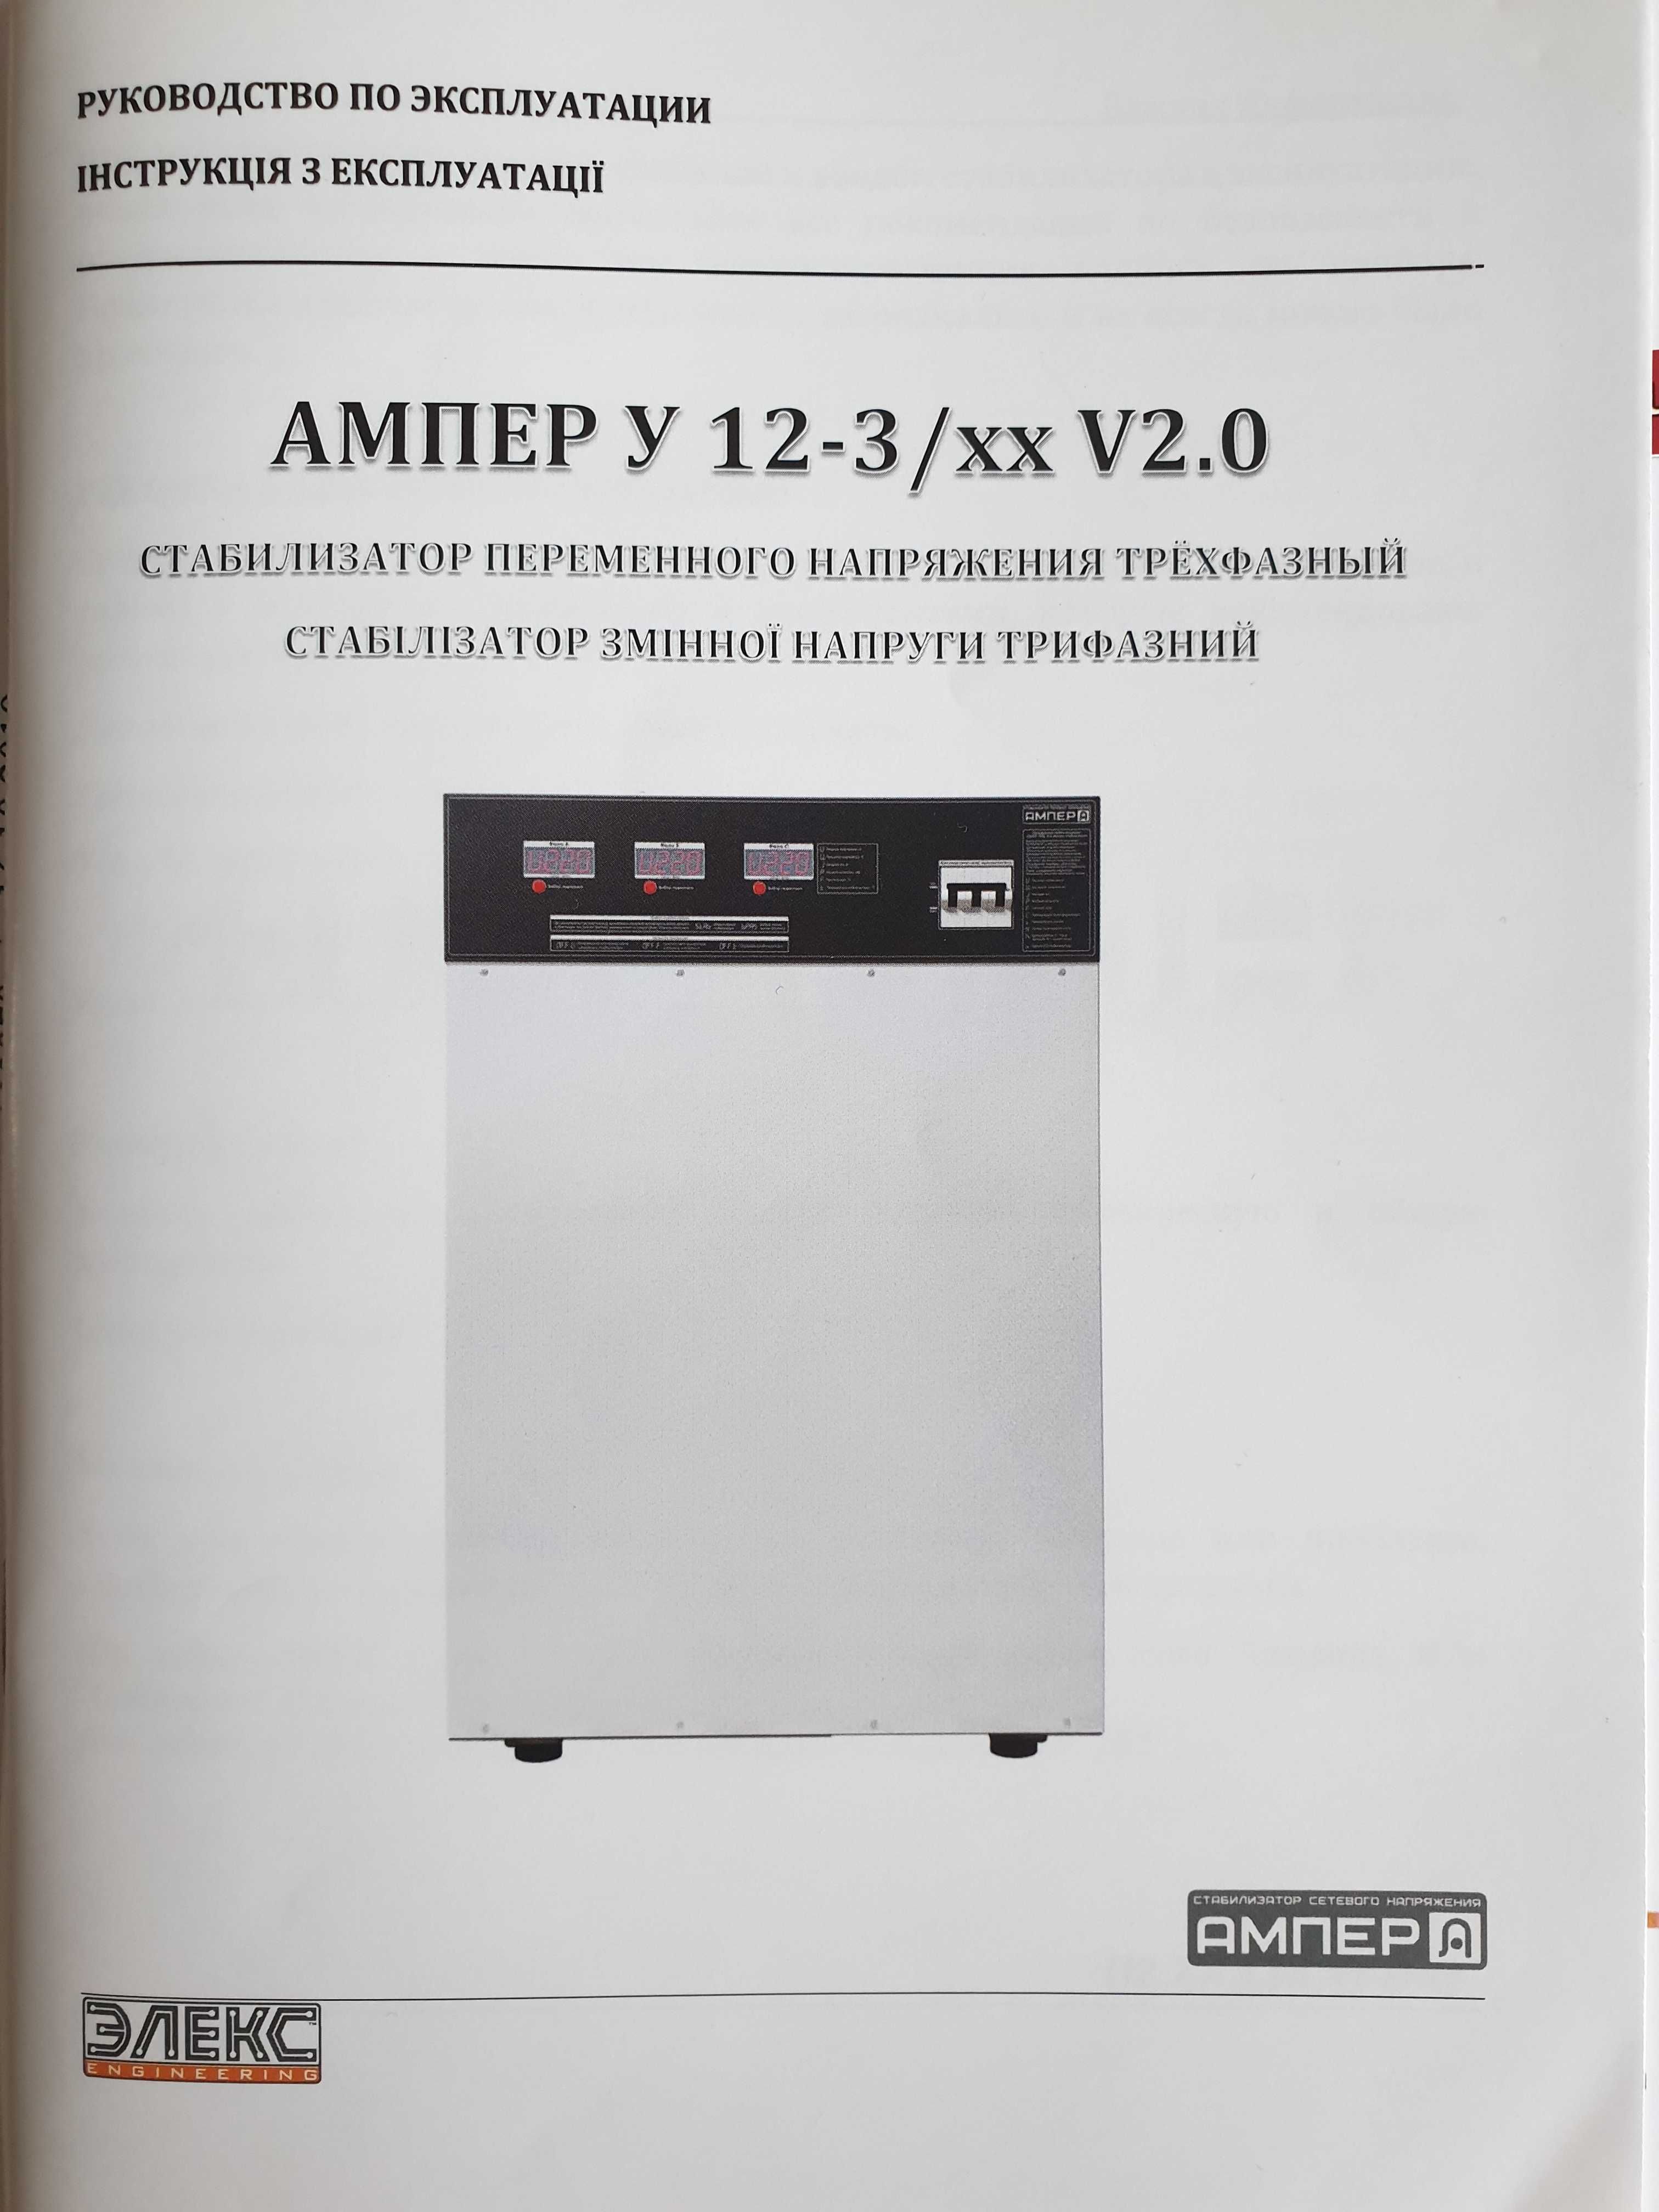 Стабилизатор напряжения трехфазный Элекс АМПЕР У 12-3/32 v2.0, 22кВт